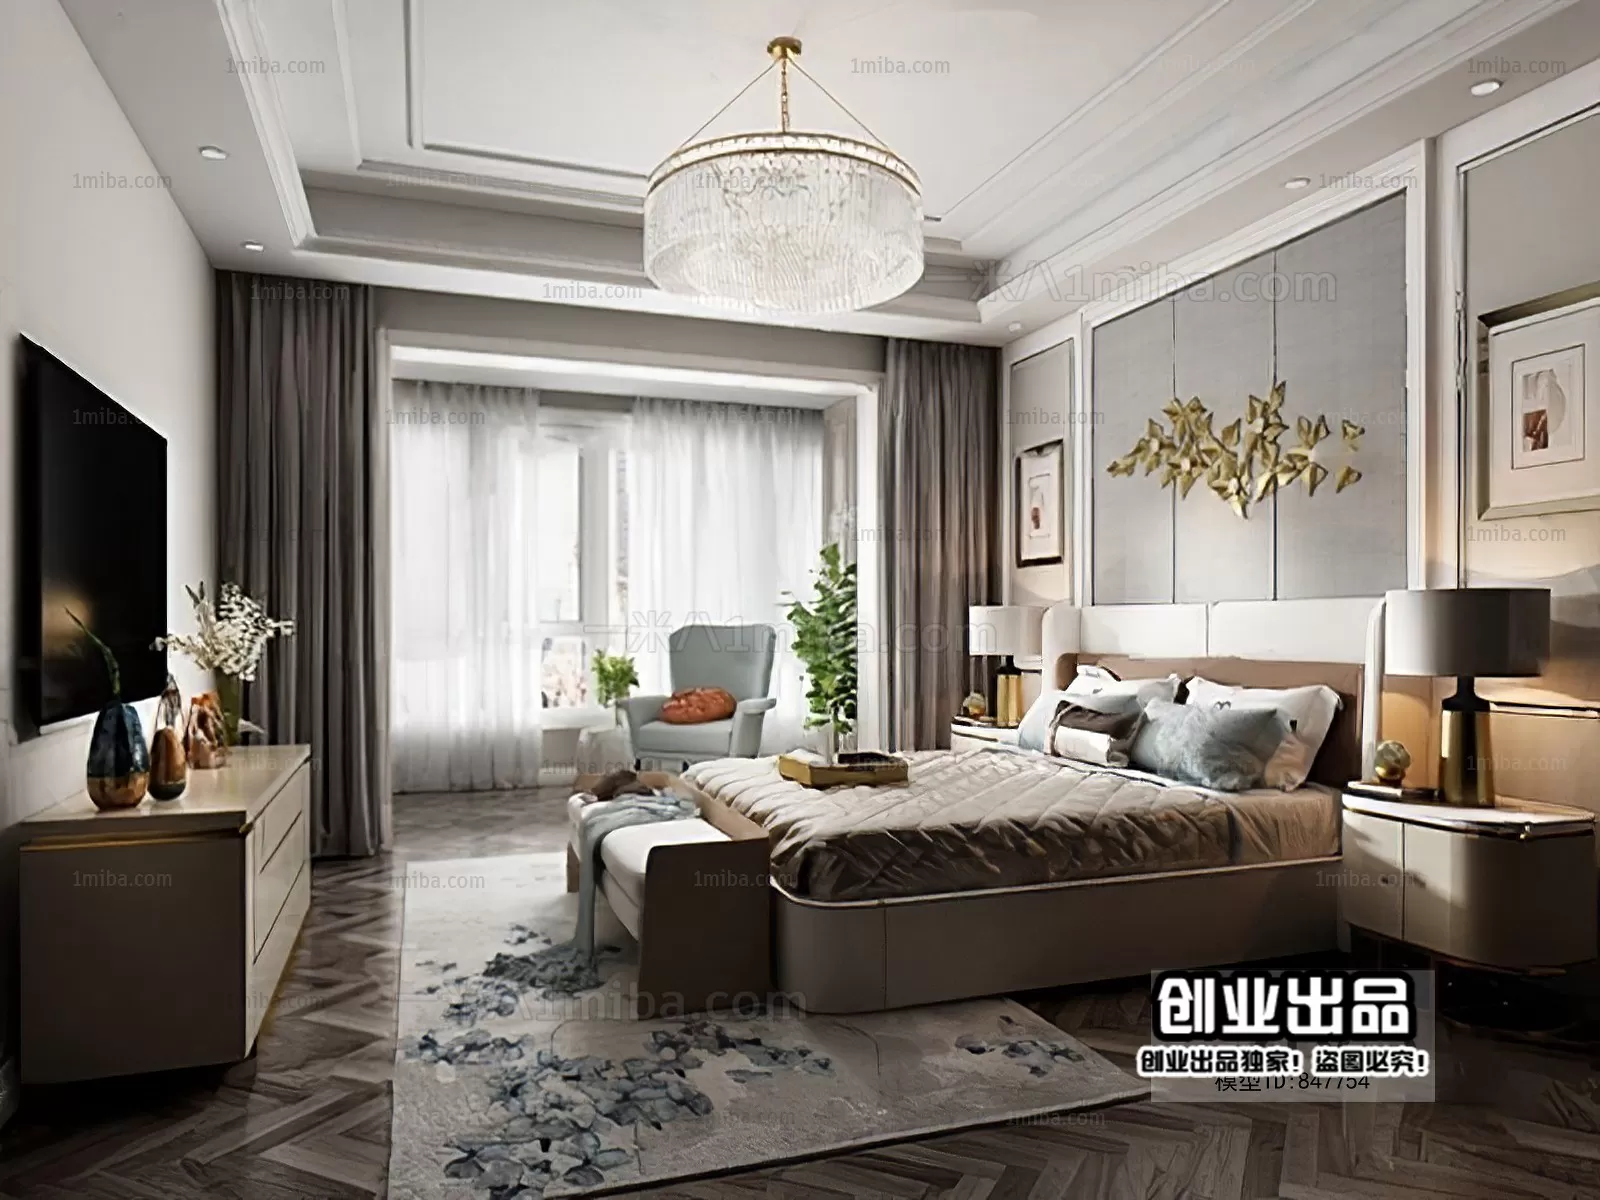 Bedroom – Modern Interior Design – 3D Models – 146